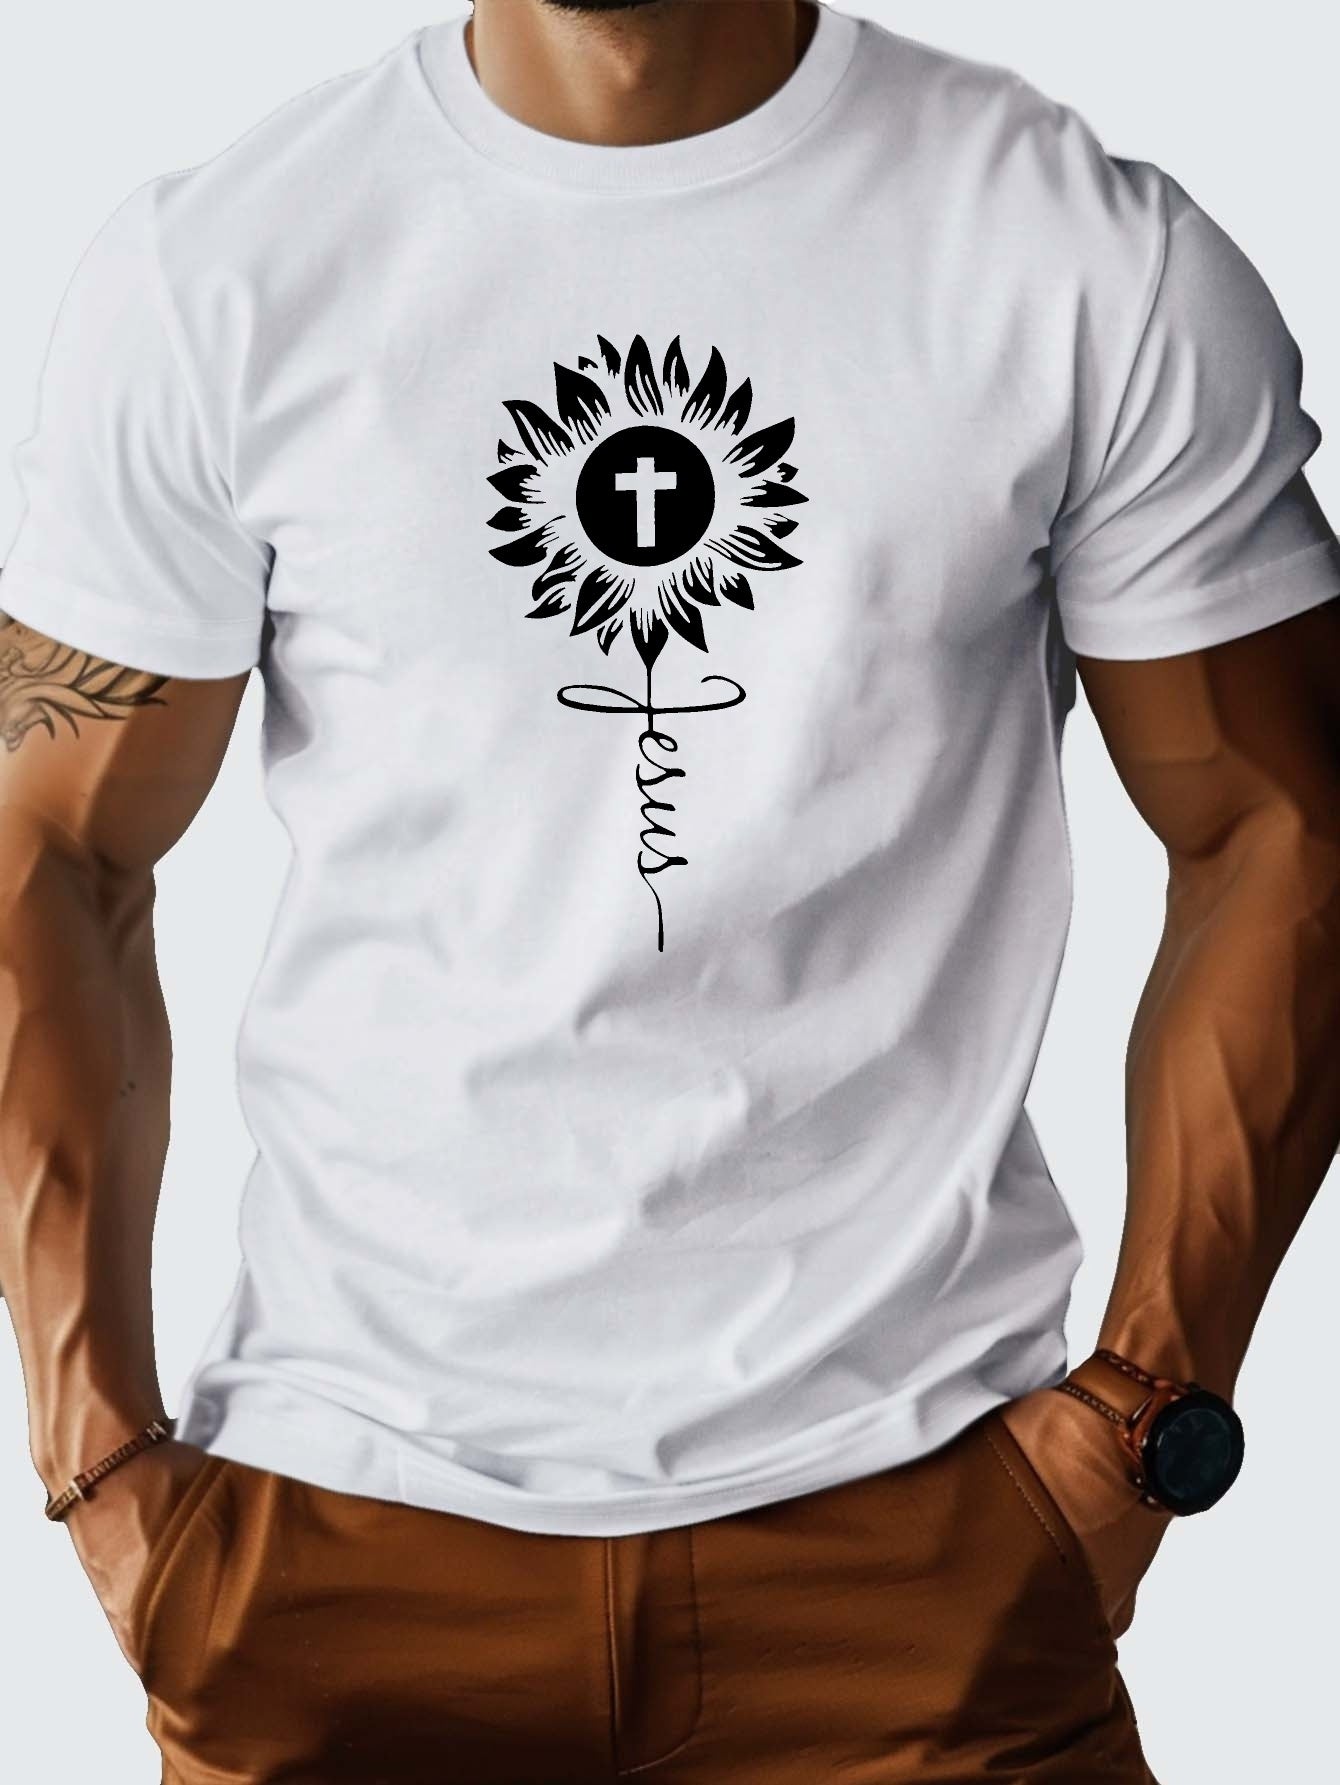 JESUS Flowered Cross Men's Christian T-shirt claimedbygoddesigns